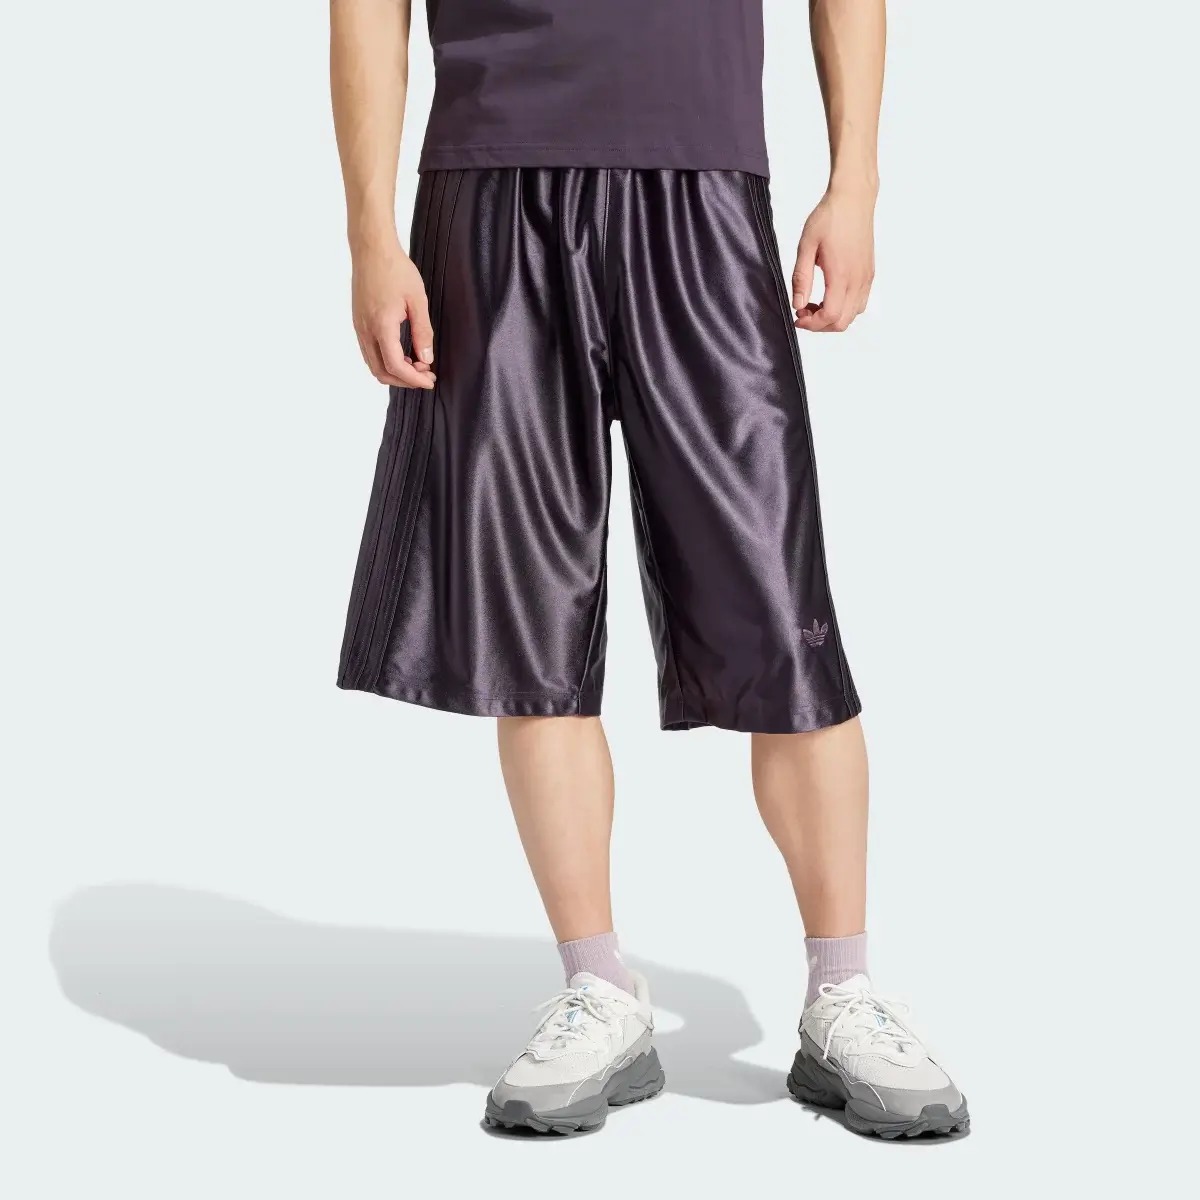 Adidas Shorts Oversized. 1